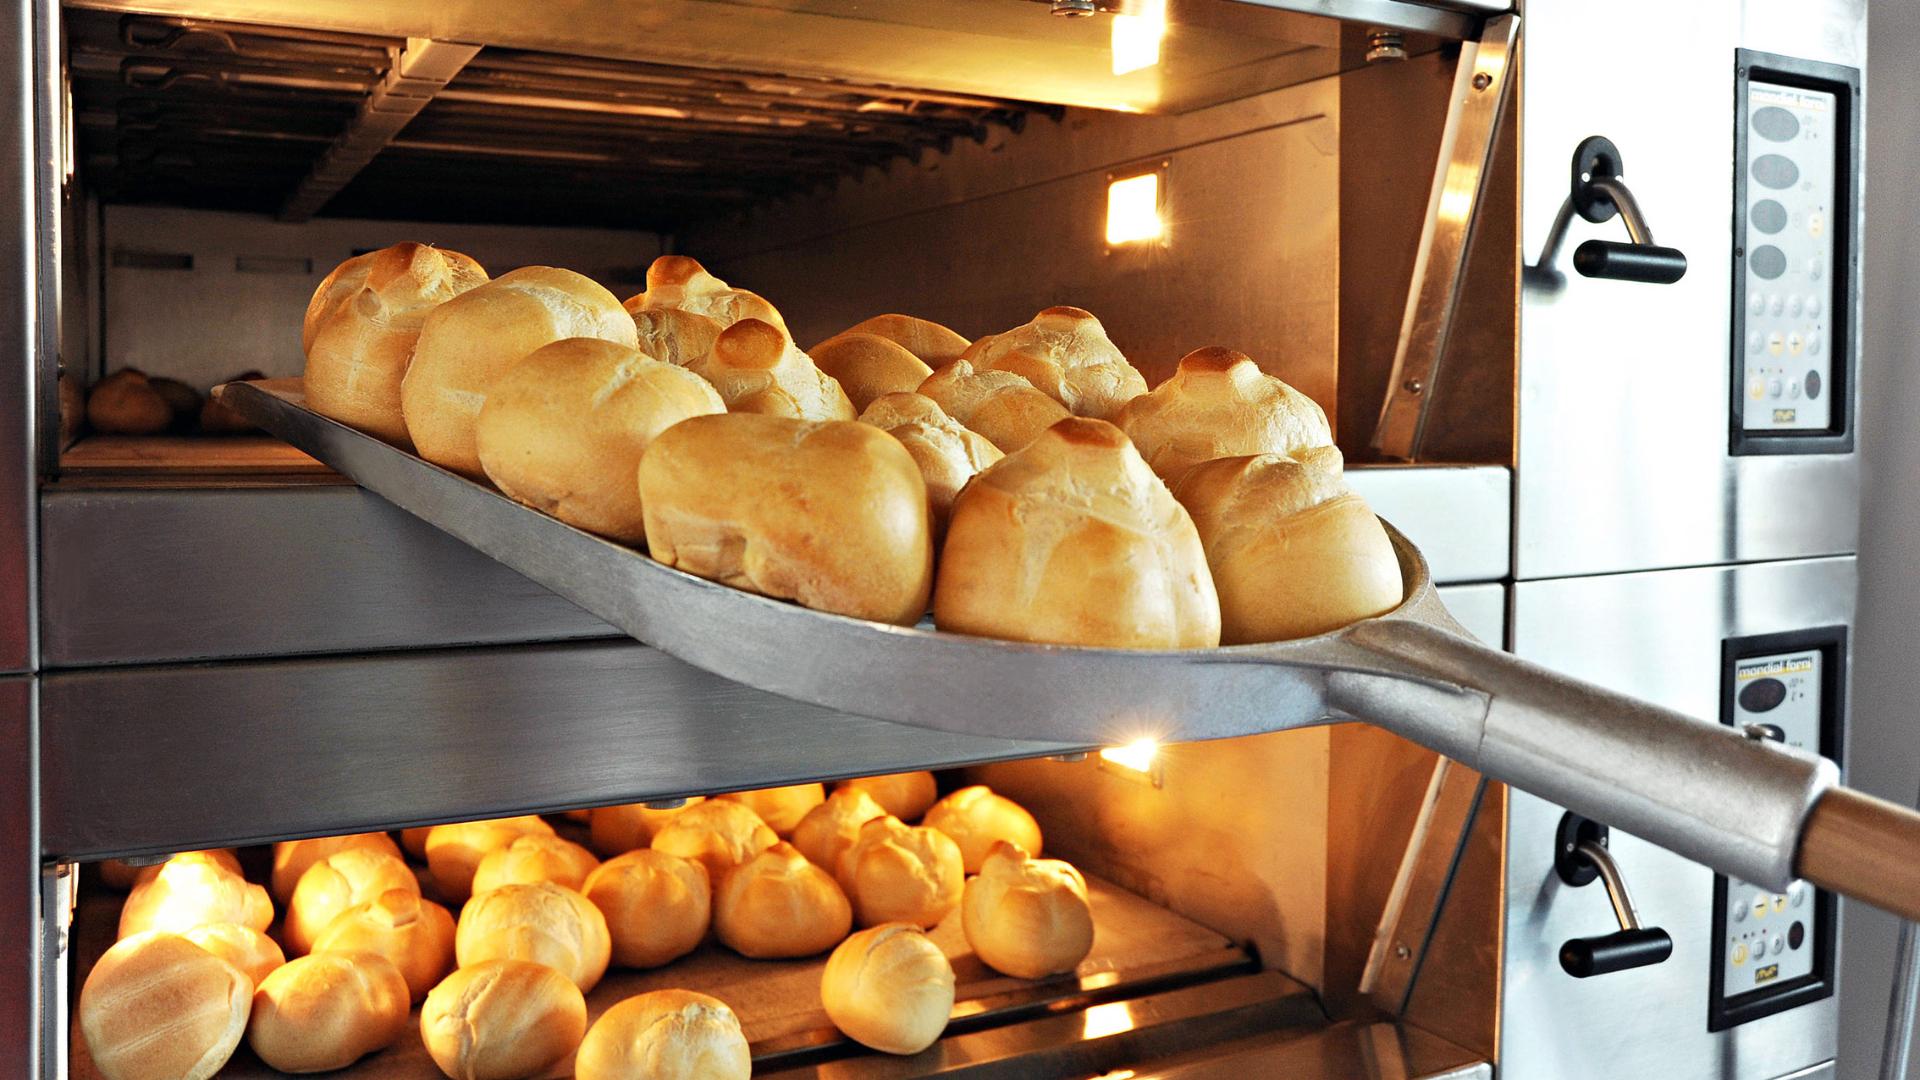 bakery equipment for making bread